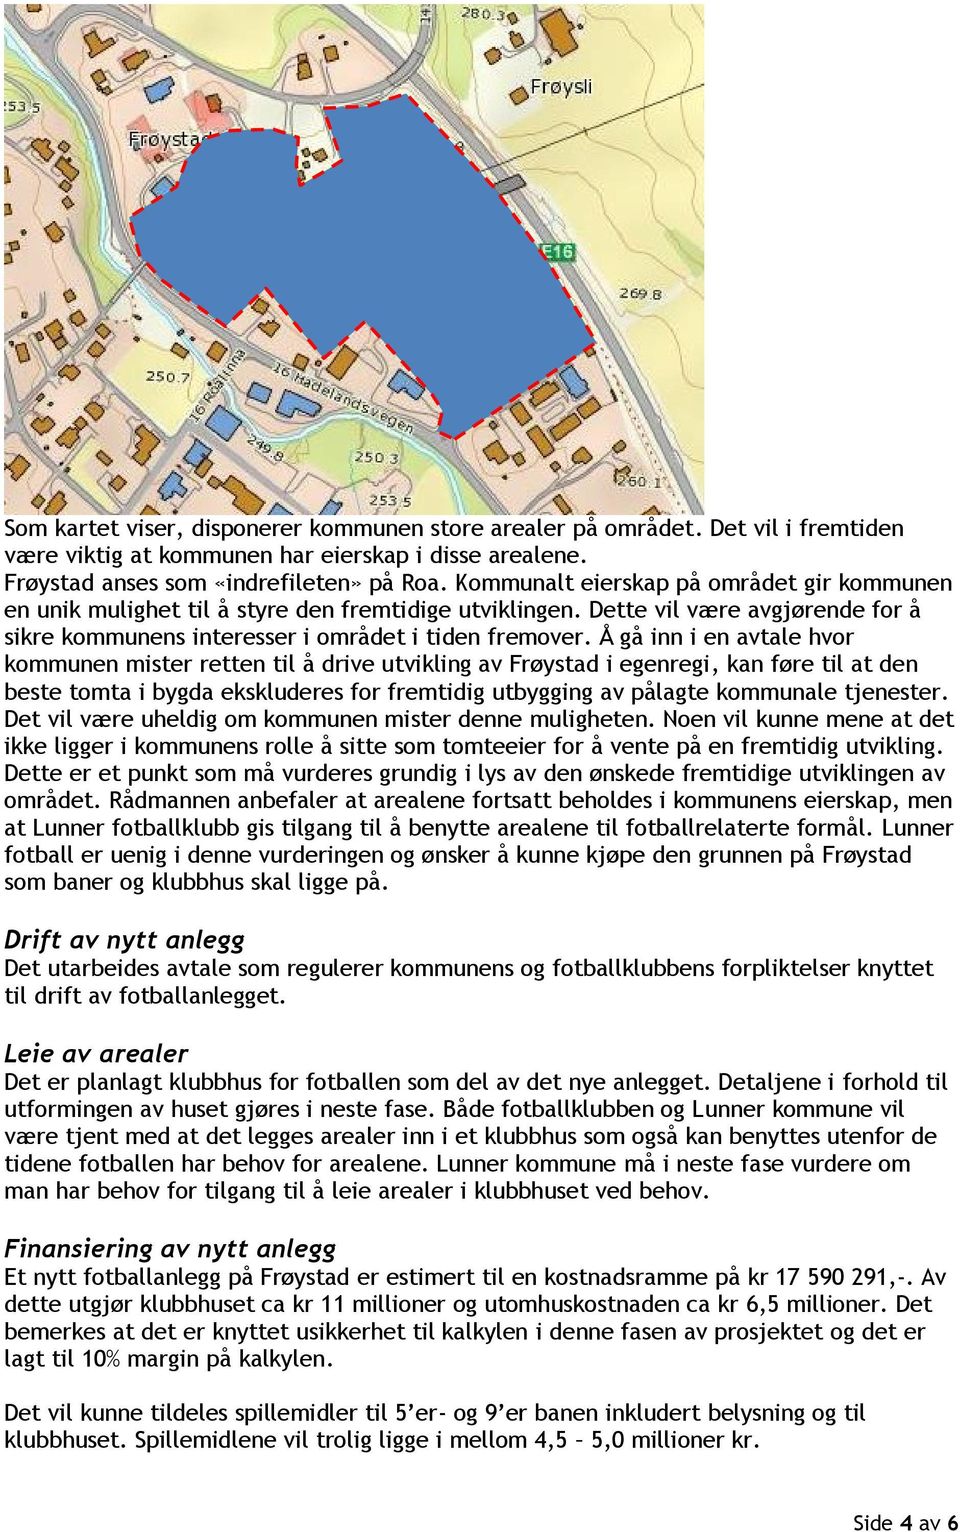 Å gå inn i en avtale hvor kommunen mister retten til å drive utvikling av Frøystad i egenregi, kan føre til at den beste tomta i bygda ekskluderes for fremtidig utbygging av pålagte kommunale